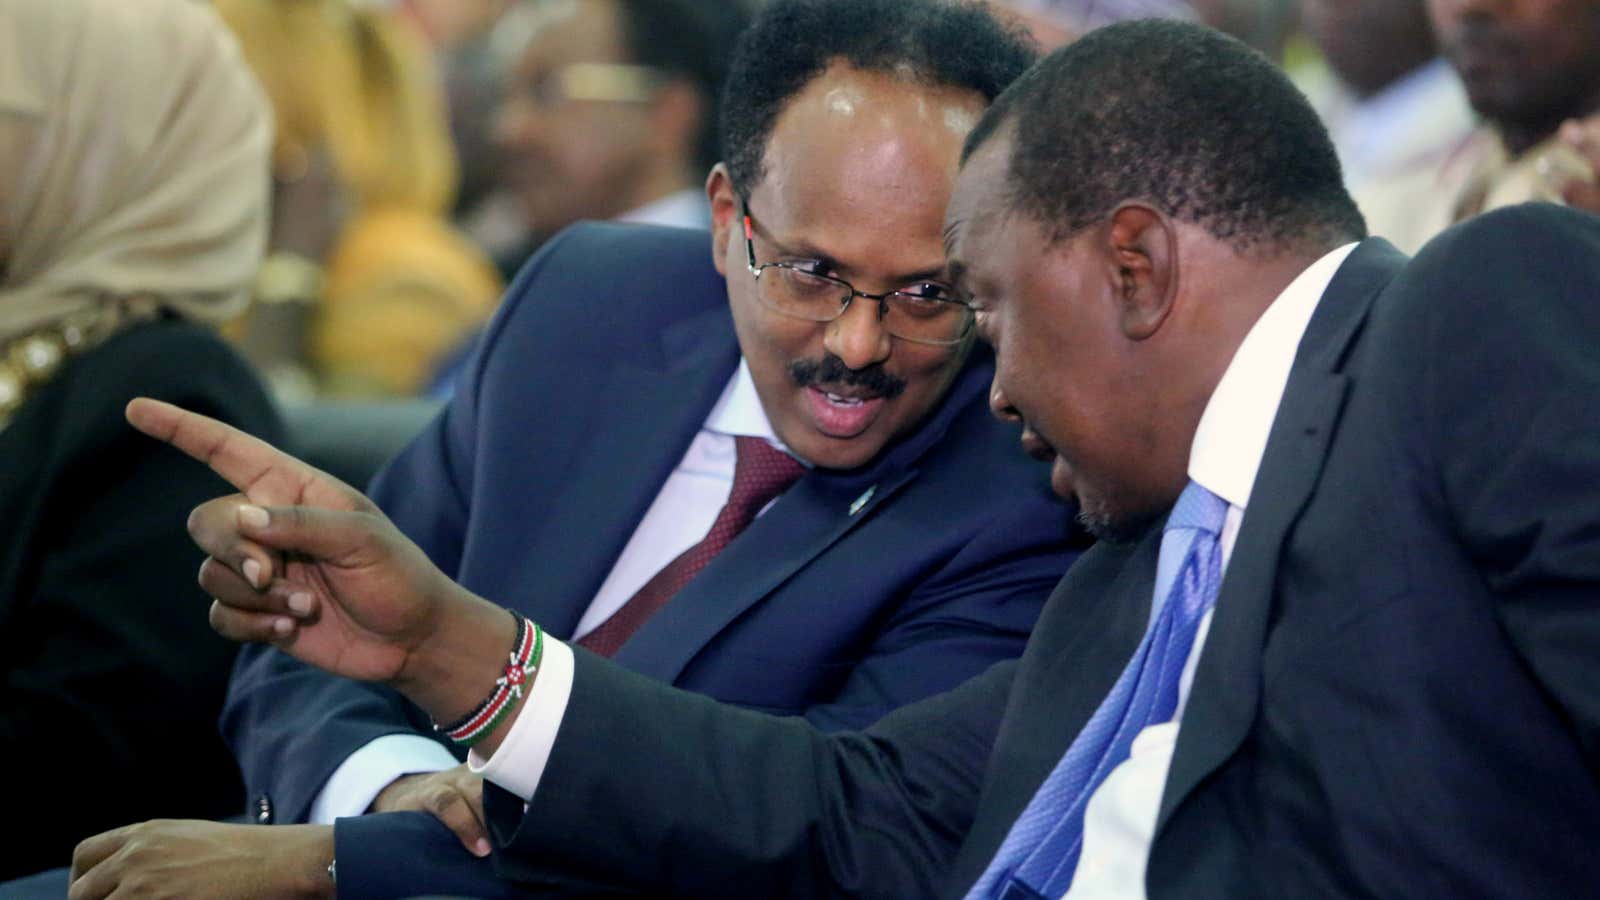 “Let’s work this out.”Somalia’s president Mohamed Abdullahi Farmaajo (L) listens to Kenya’s President Uhuru Kenyatta